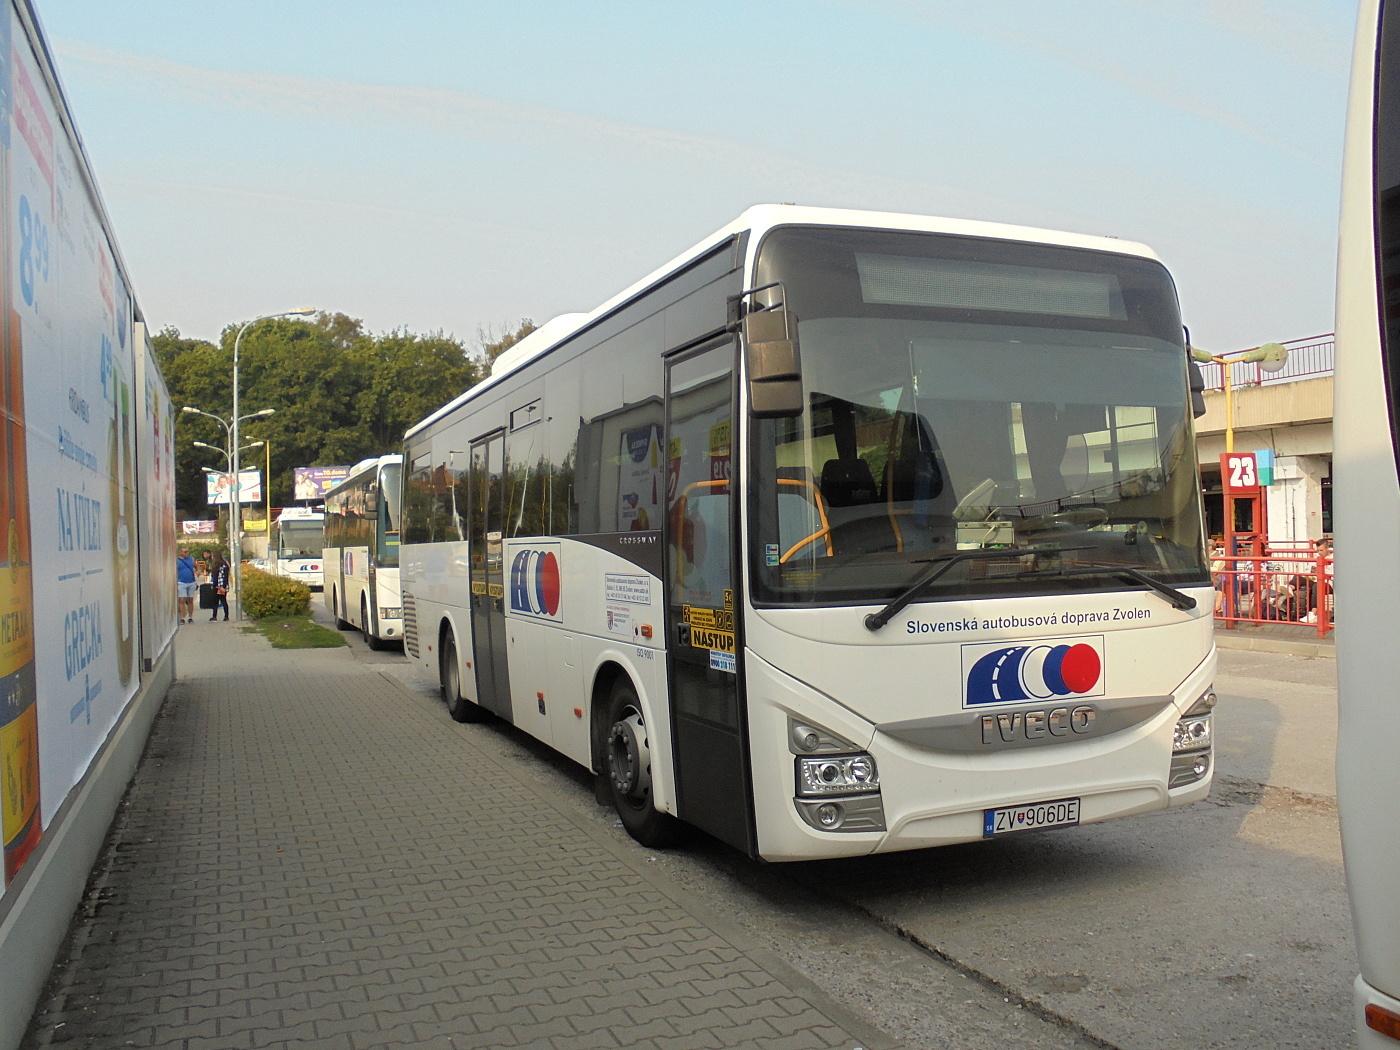 Iveco Crossway Line 10.8M #ZV-906DE